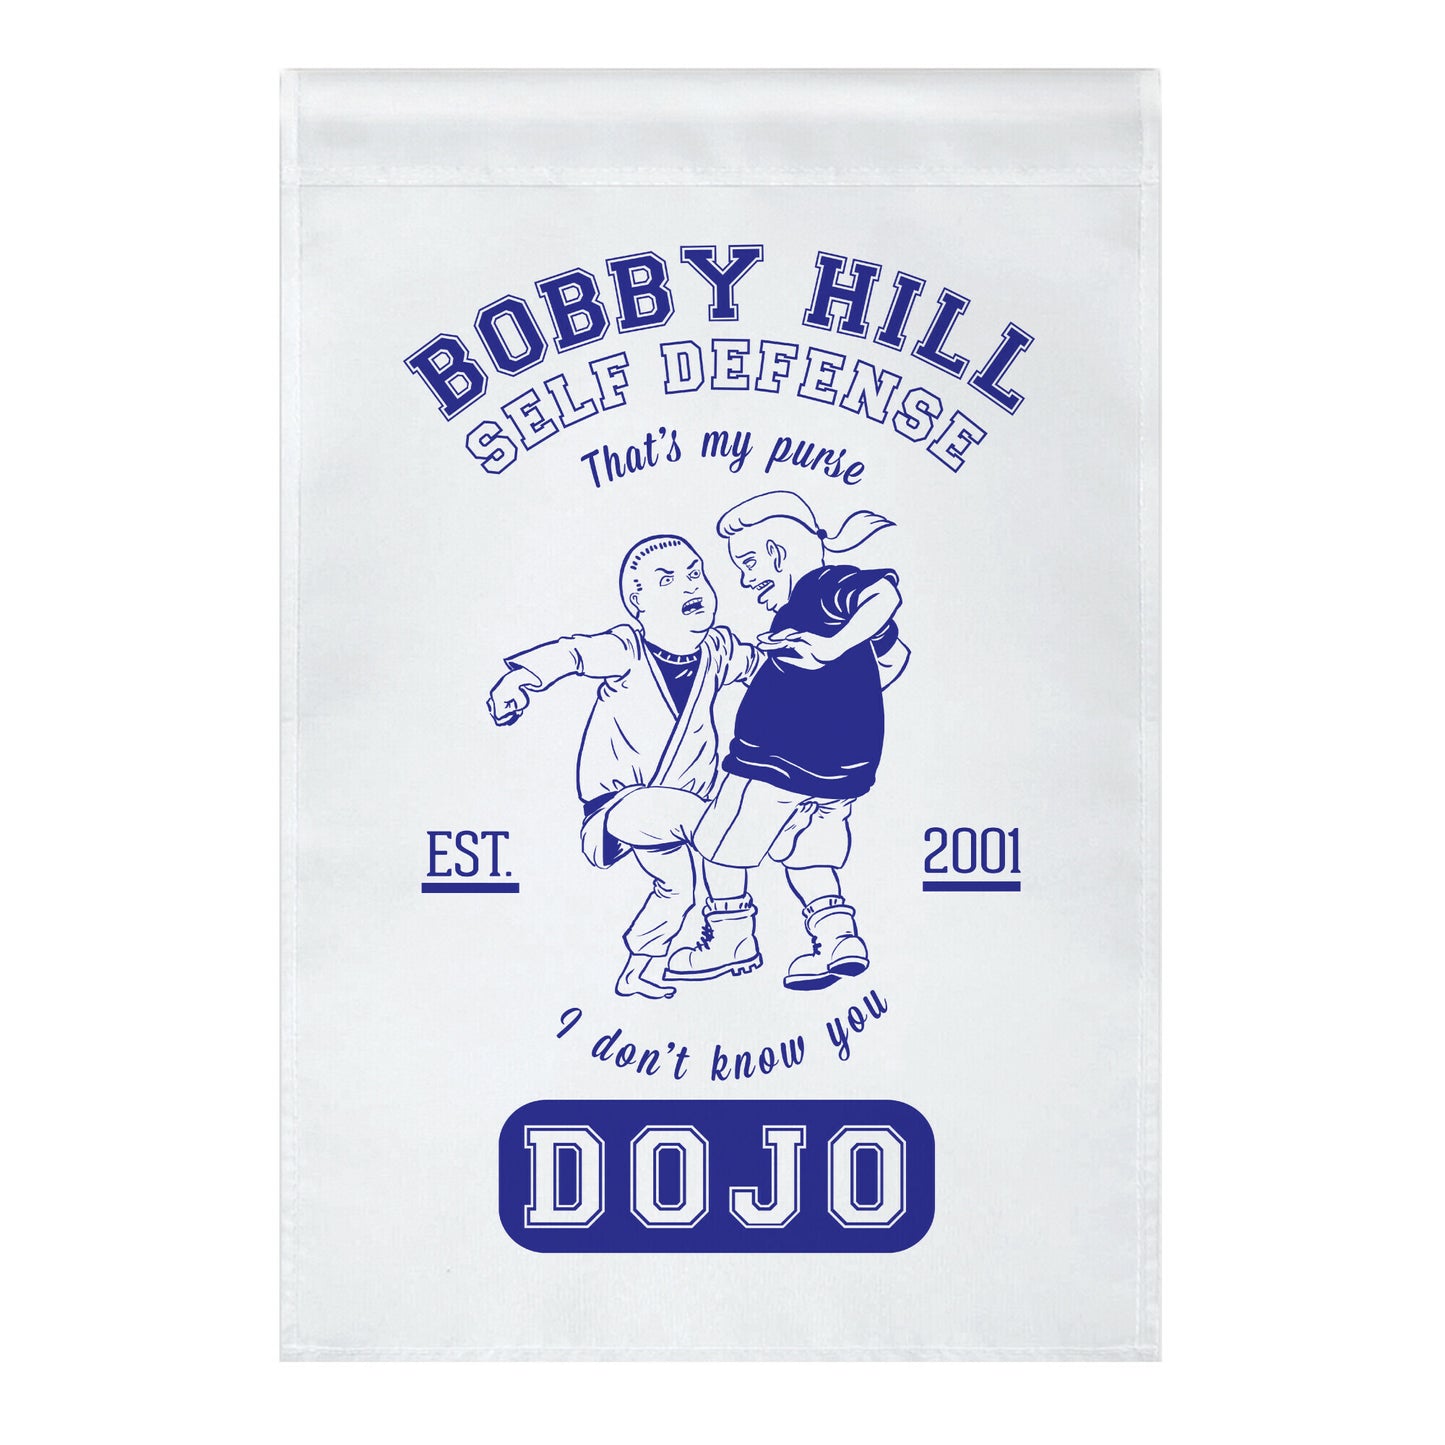 Bobby Hill Self Defense Dojo Garden Flag